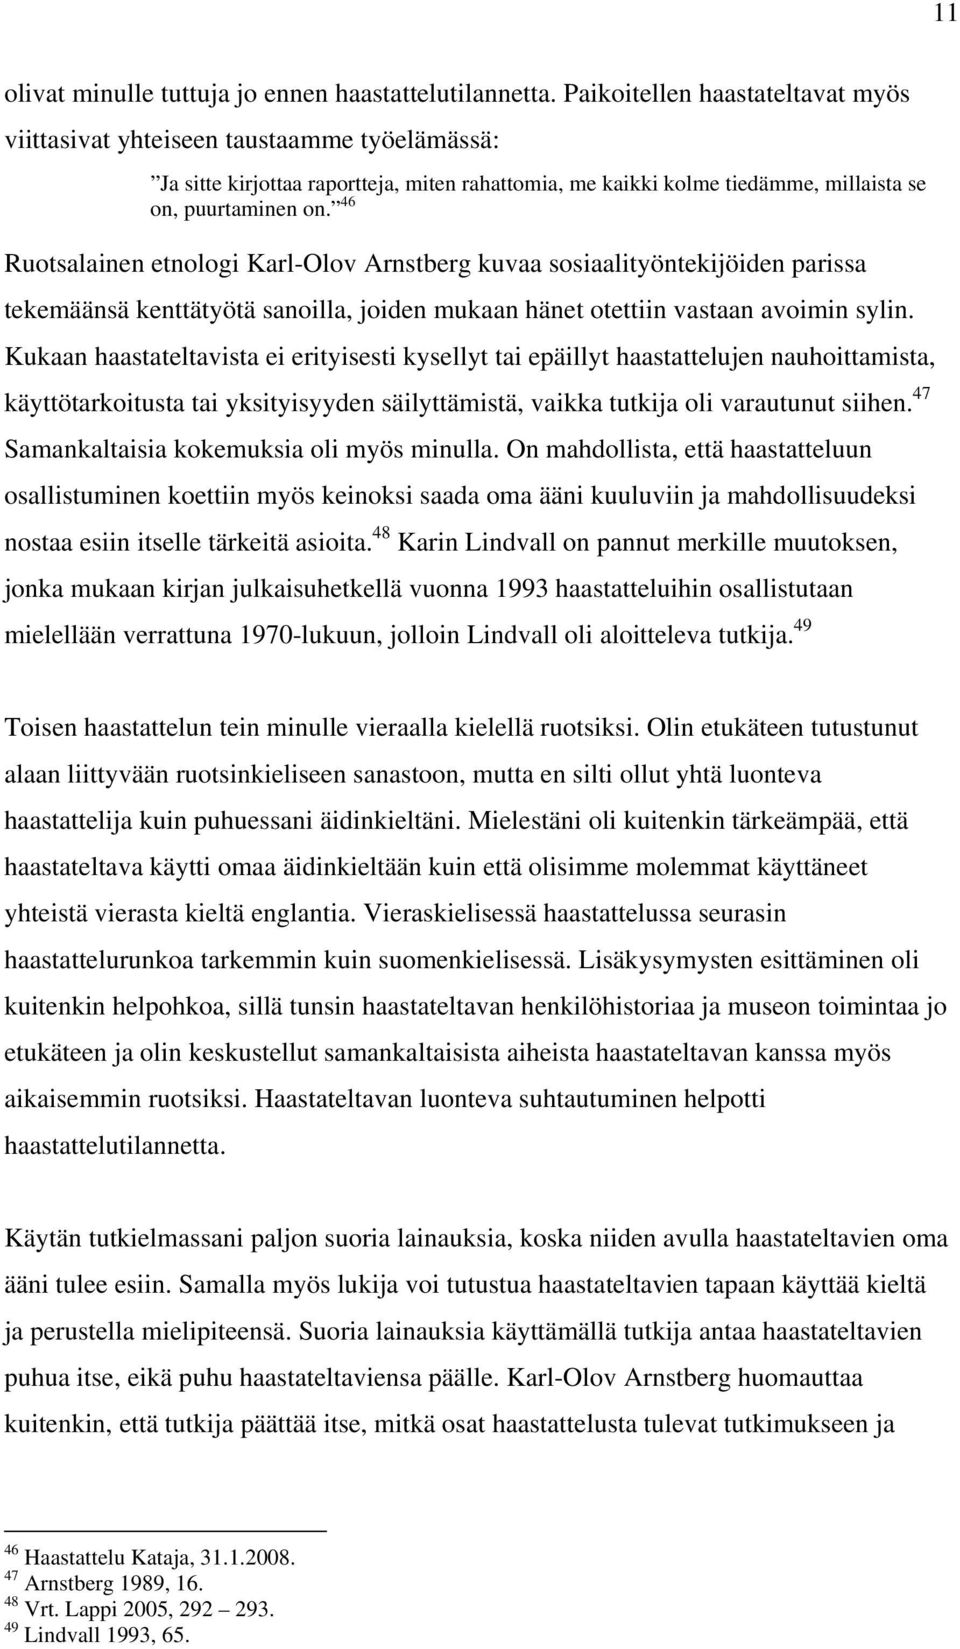 46 Ruotsalainen etnologi Karl-Olov Arnstberg kuvaa sosiaalityöntekijöiden parissa tekemäänsä kenttätyötä sanoilla, joiden mukaan hänet otettiin vastaan avoimin sylin.